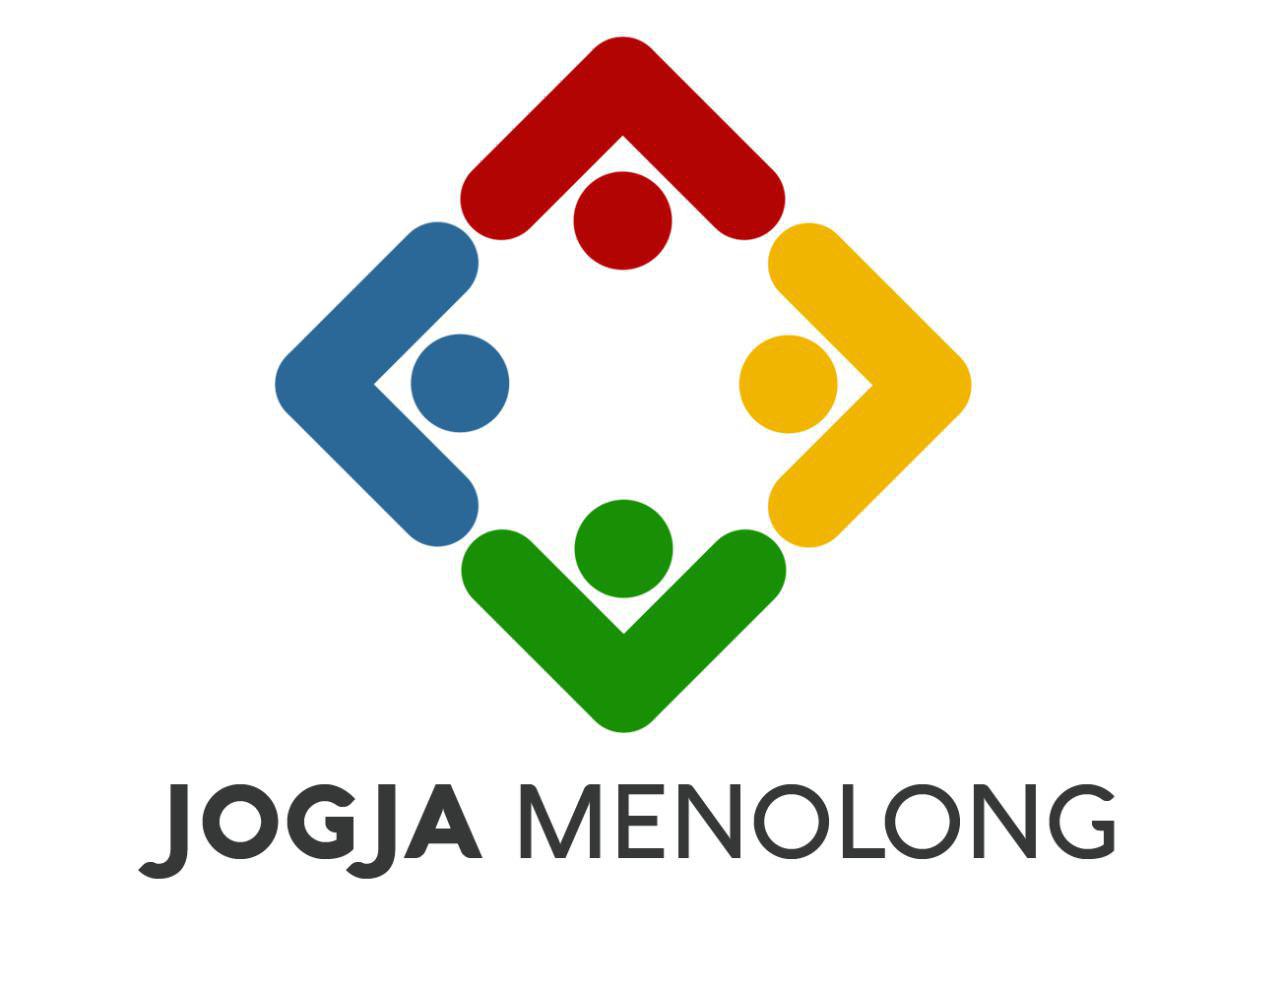 Jogja Menolong Logo